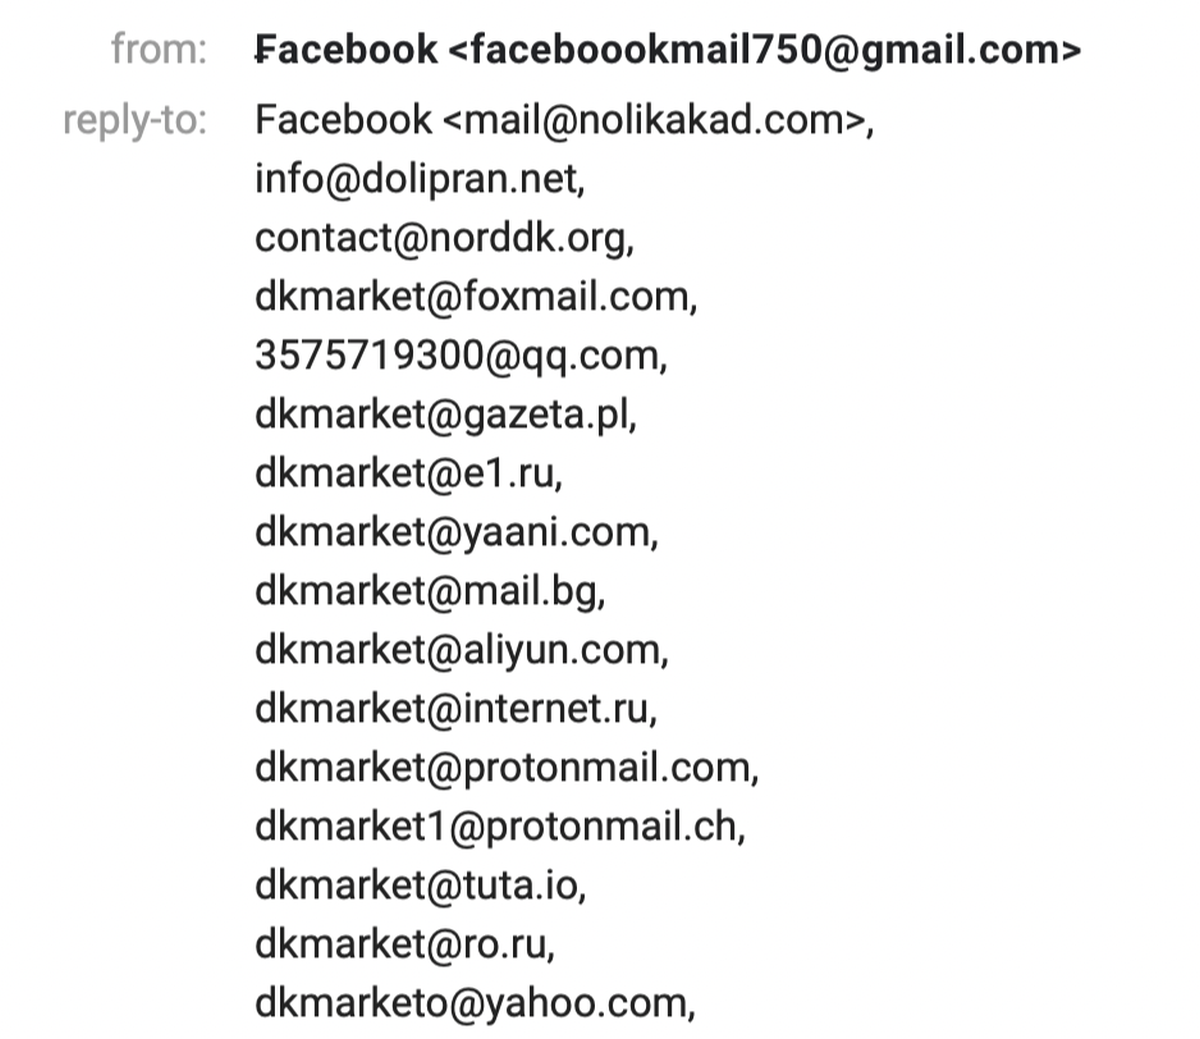 Lista de direcciones de correo electrónico fraudulentas en el mensaje